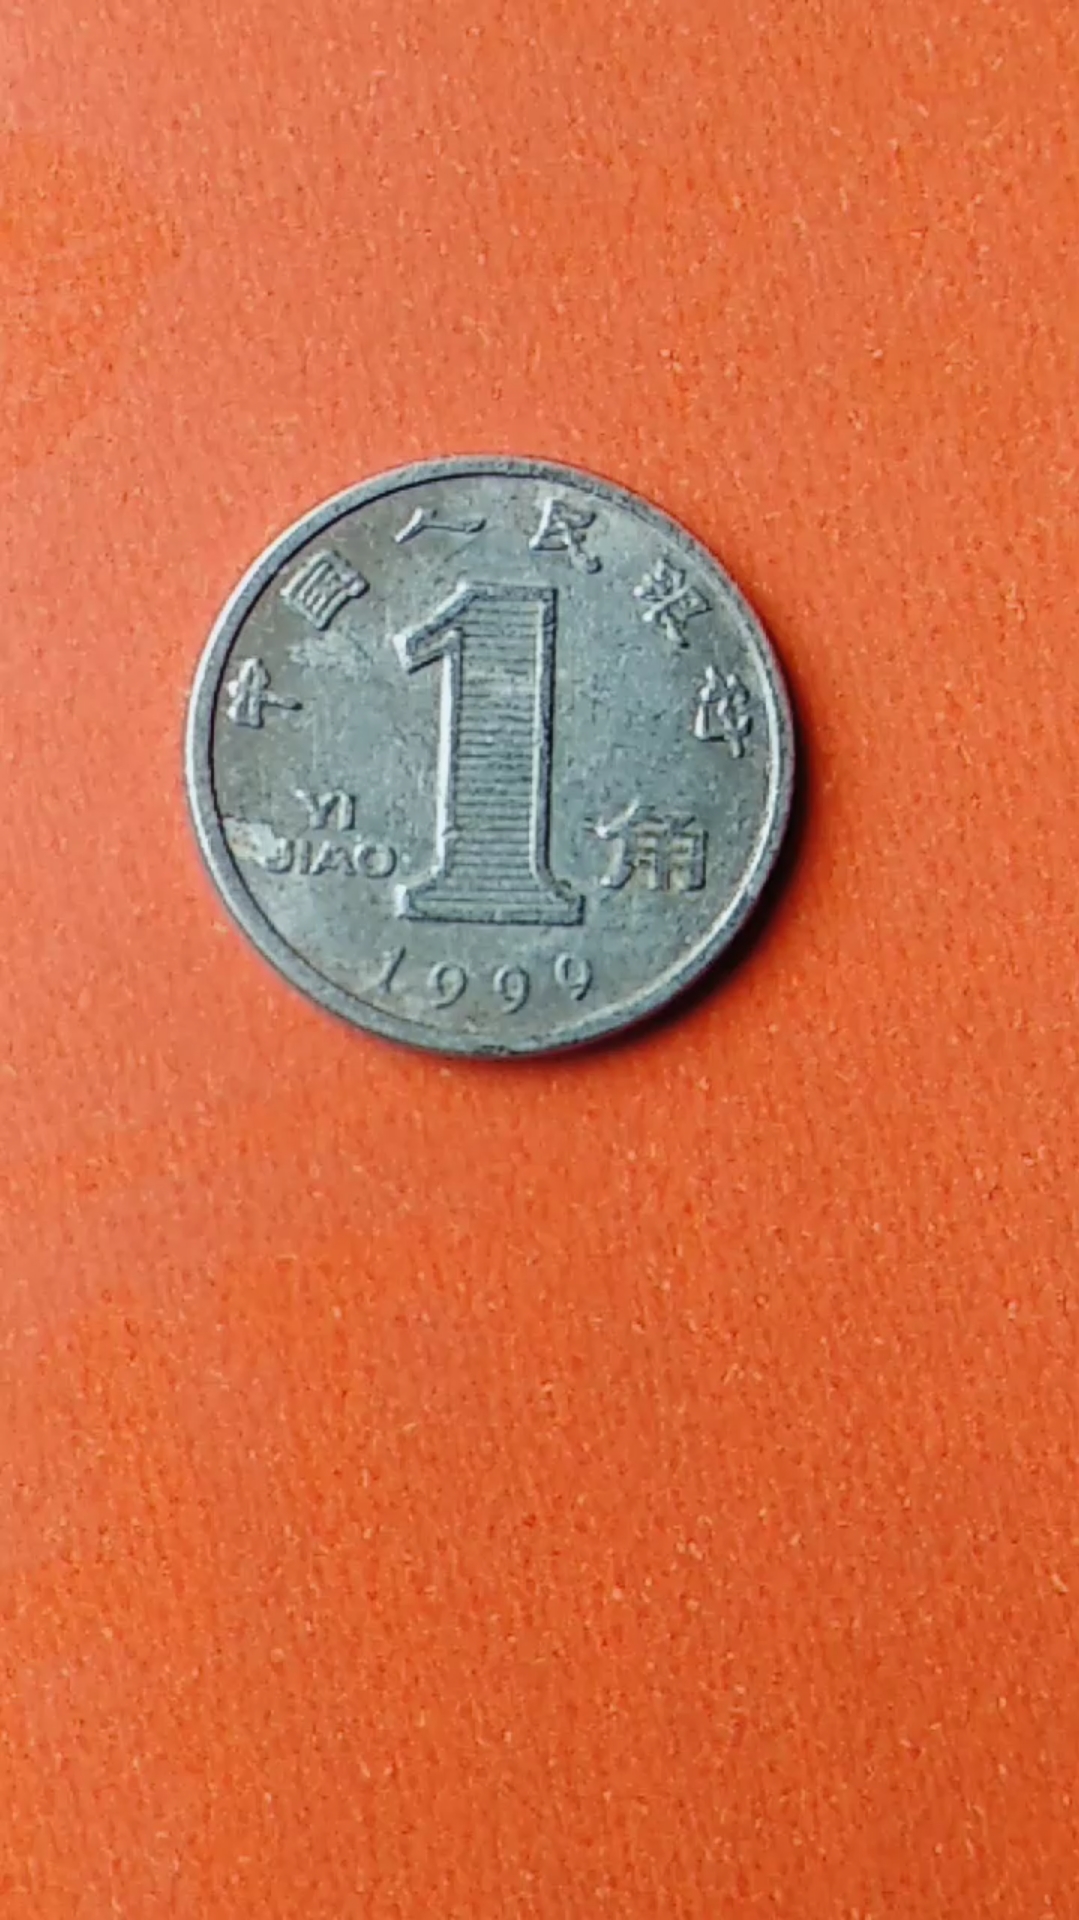 1999版豹子号大兰花1角硬币